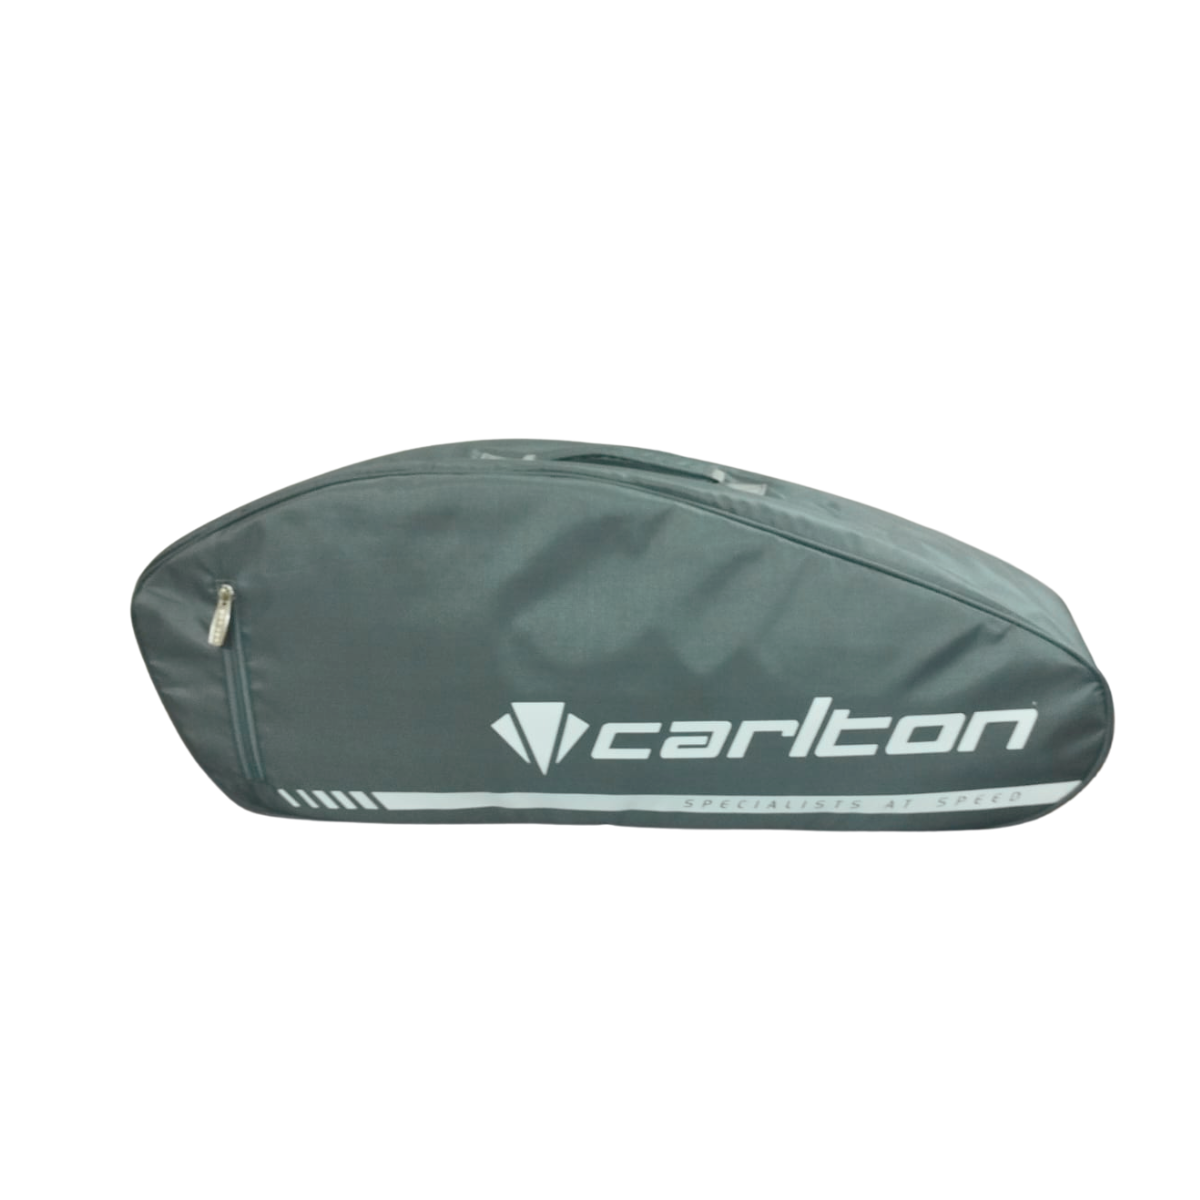 Carlton Air Edge 1-comp Badminton Kit Bag